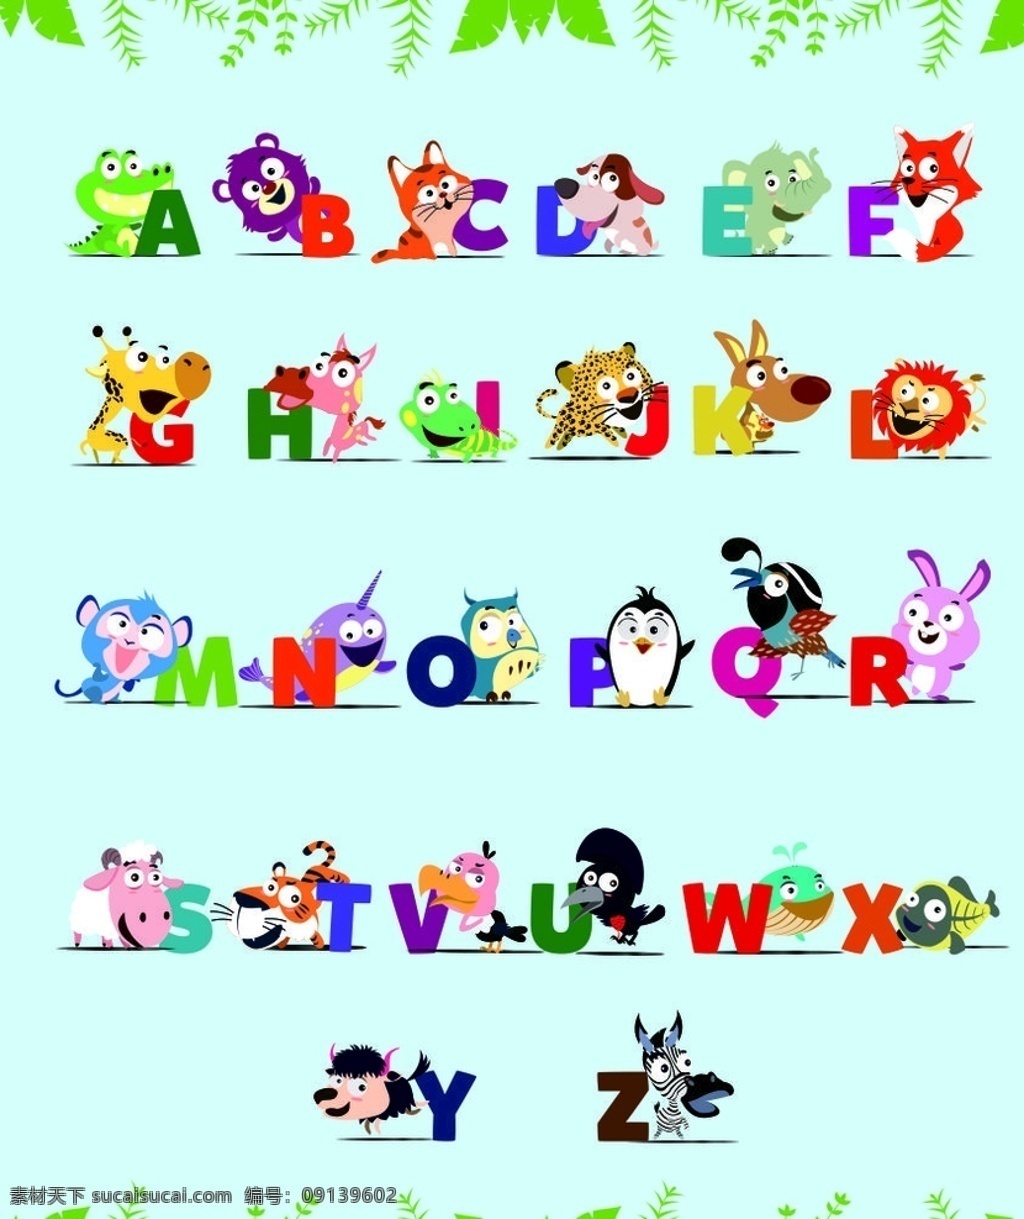 可爱 动物 英文 字母 可爱英文字母 可爱动物字母 可爱字母 可爱英文 动物英文 英文字母 可爱字符 动物字符 矢量人物 图案类